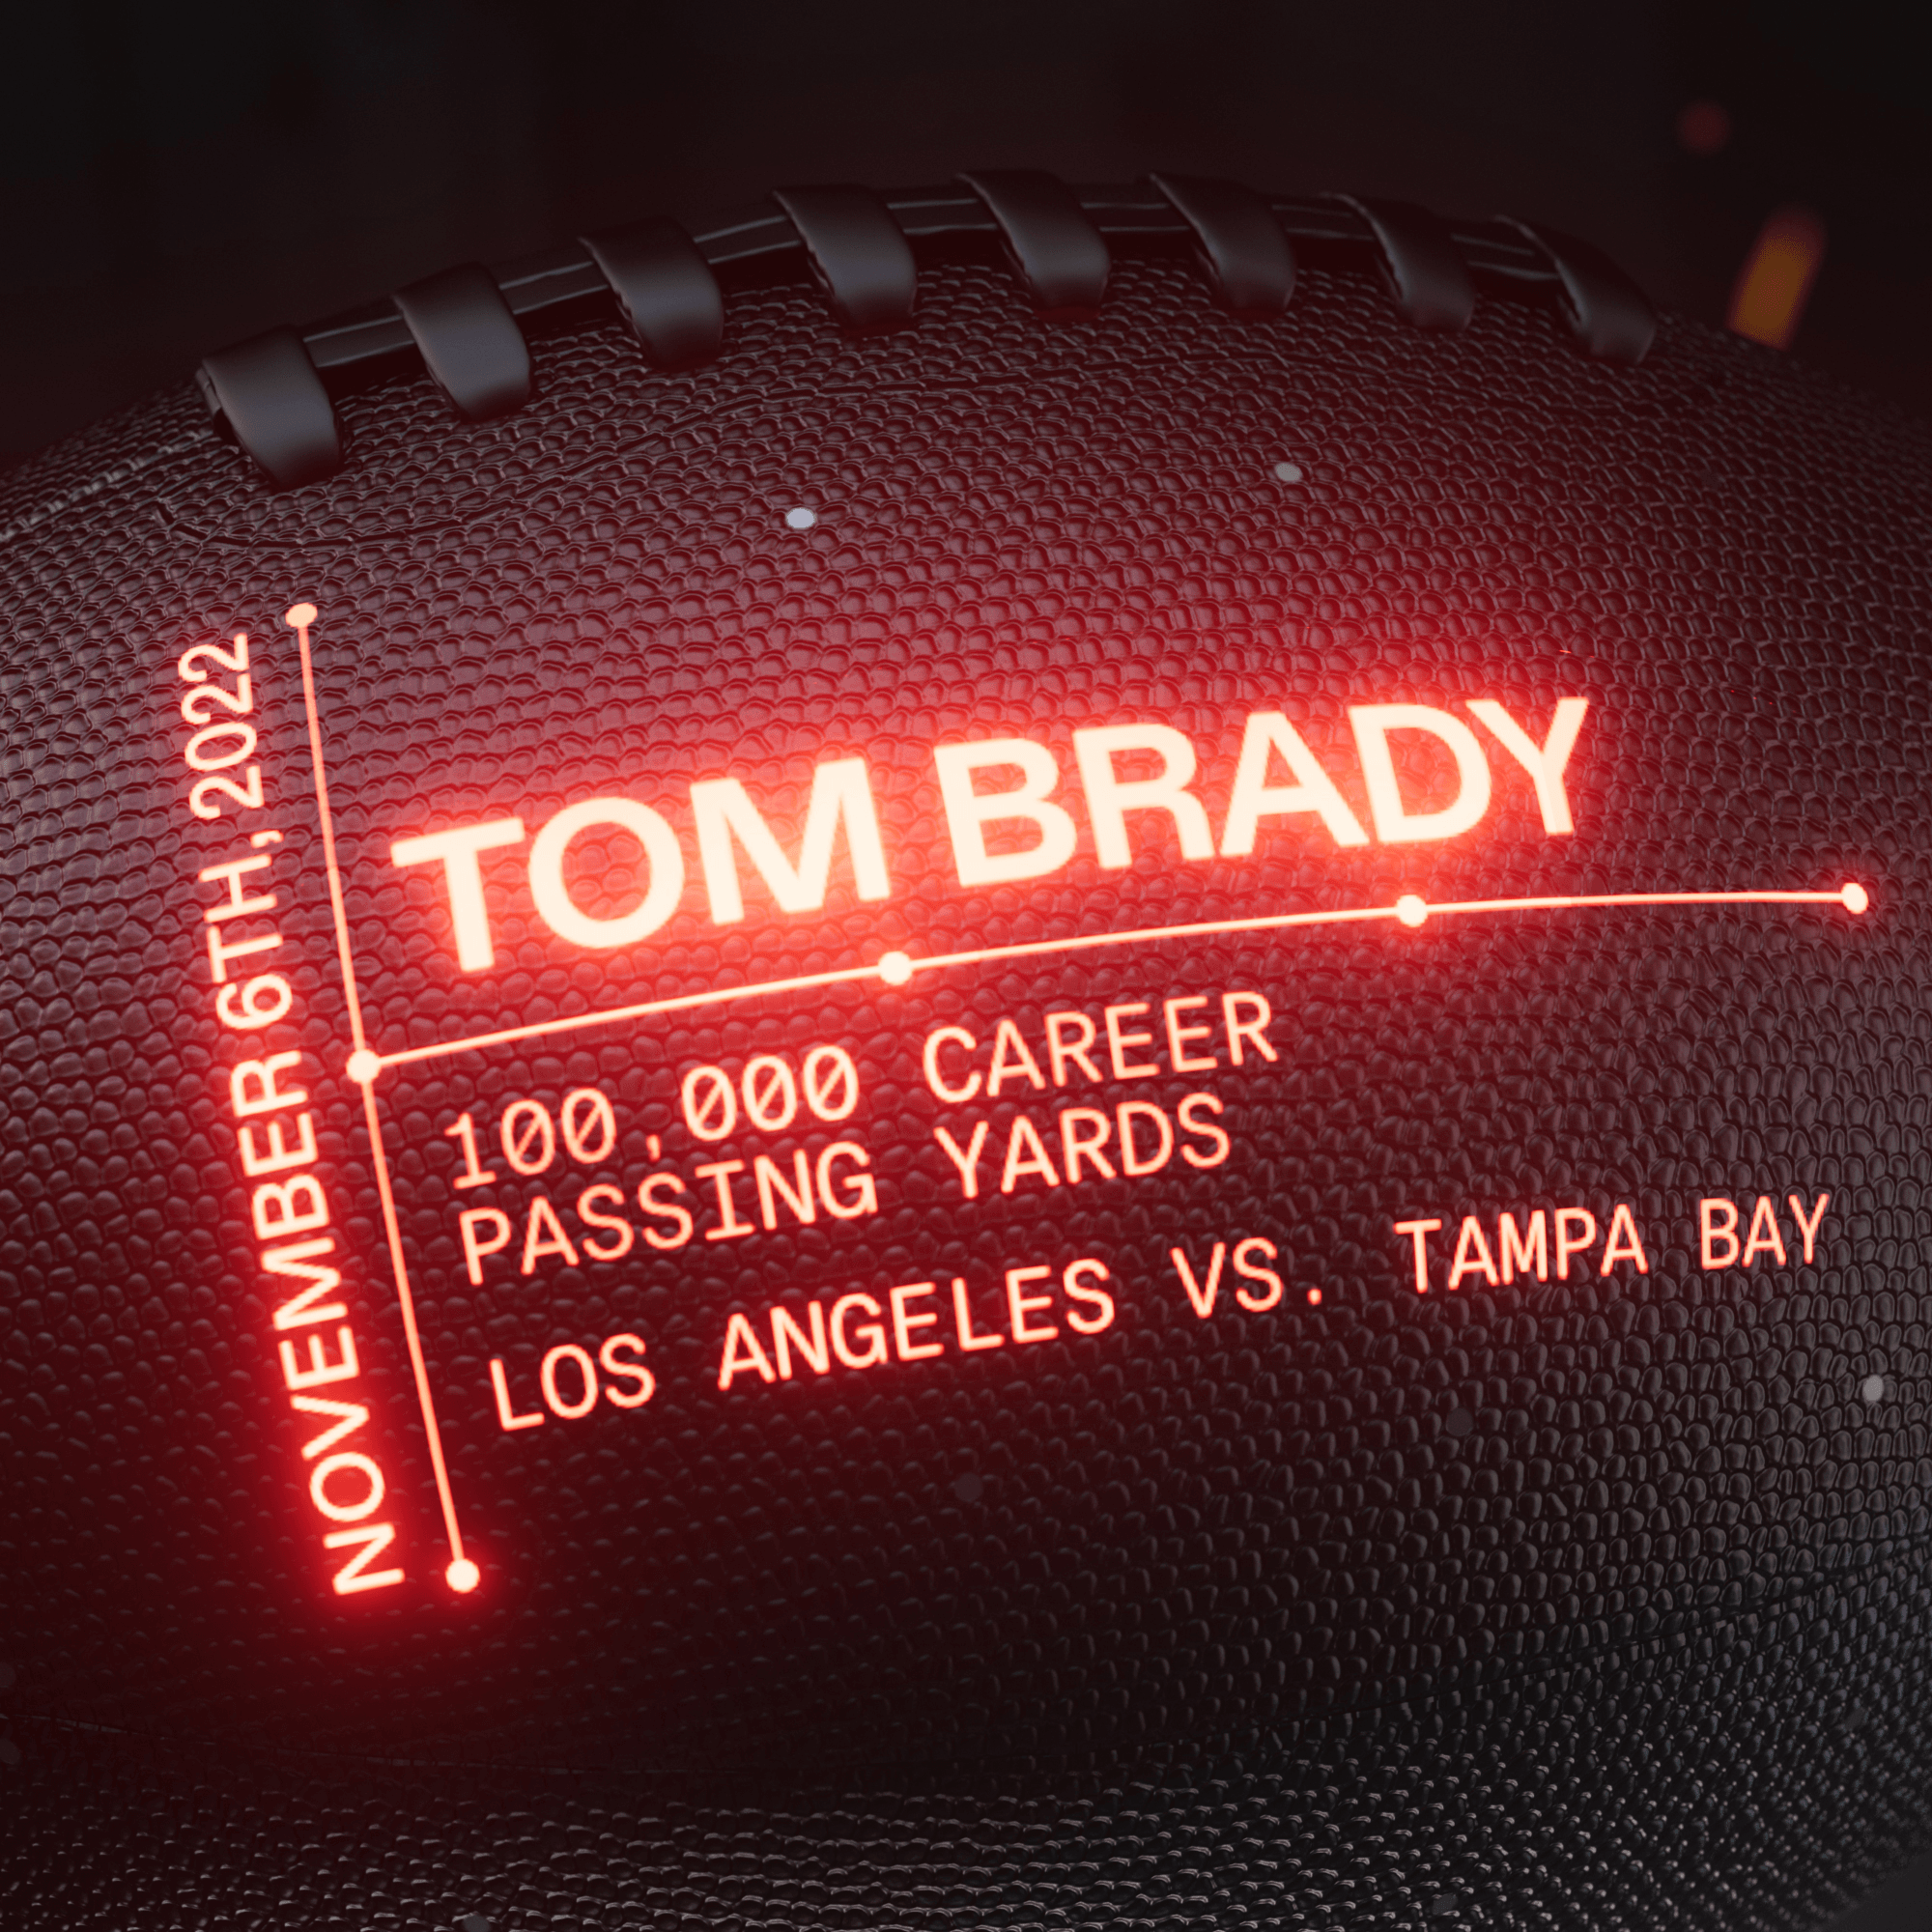 Tom Brady: 100,000 Career Passing Yards #186